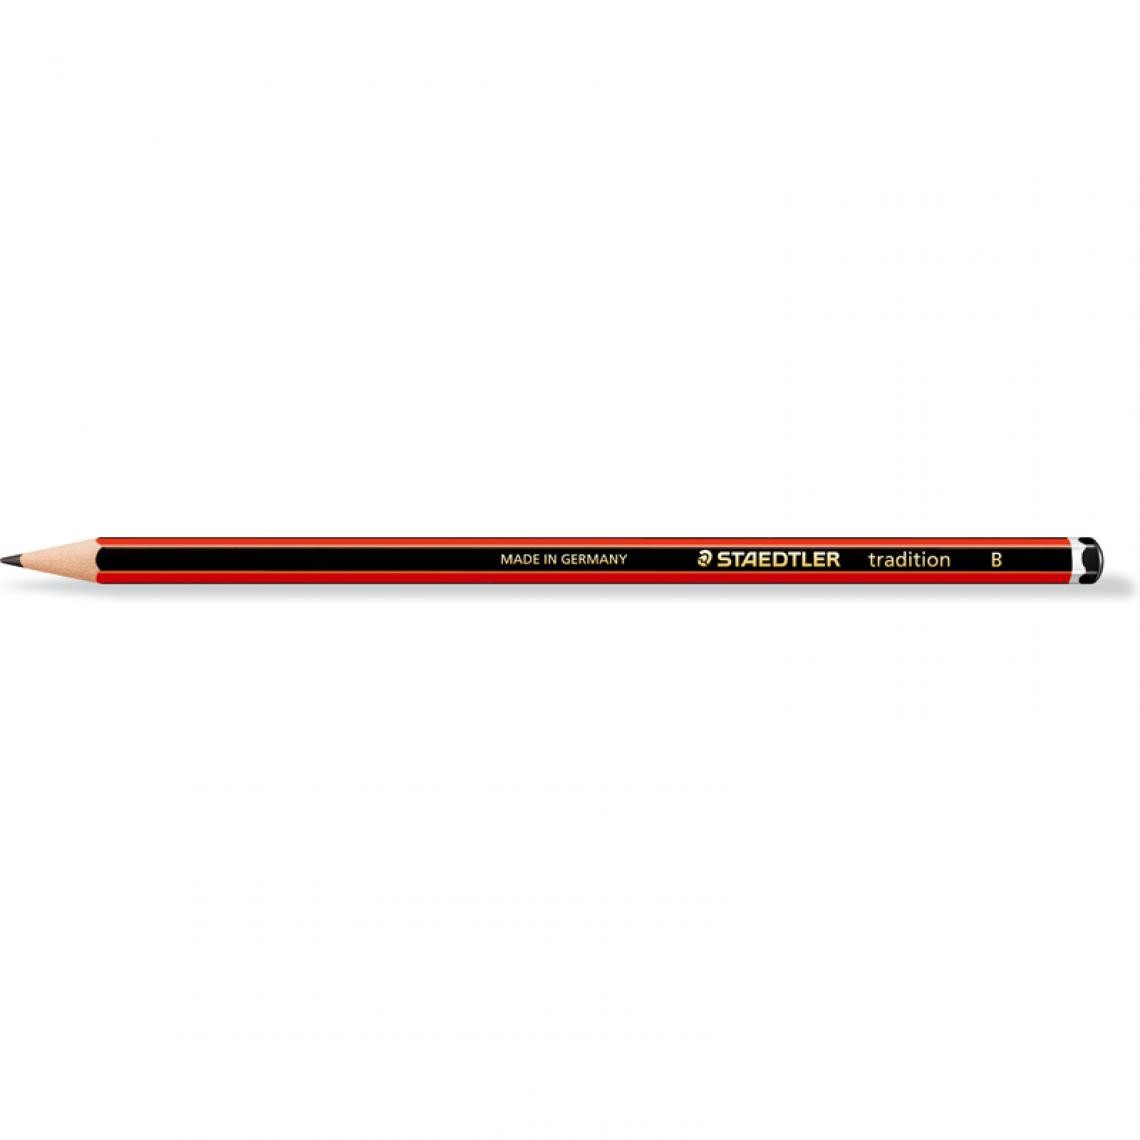 Staedtler - STAEDTLER Crayon tradition 110, degré dureté: B, hexagonal () - Outils et accessoires du peintre